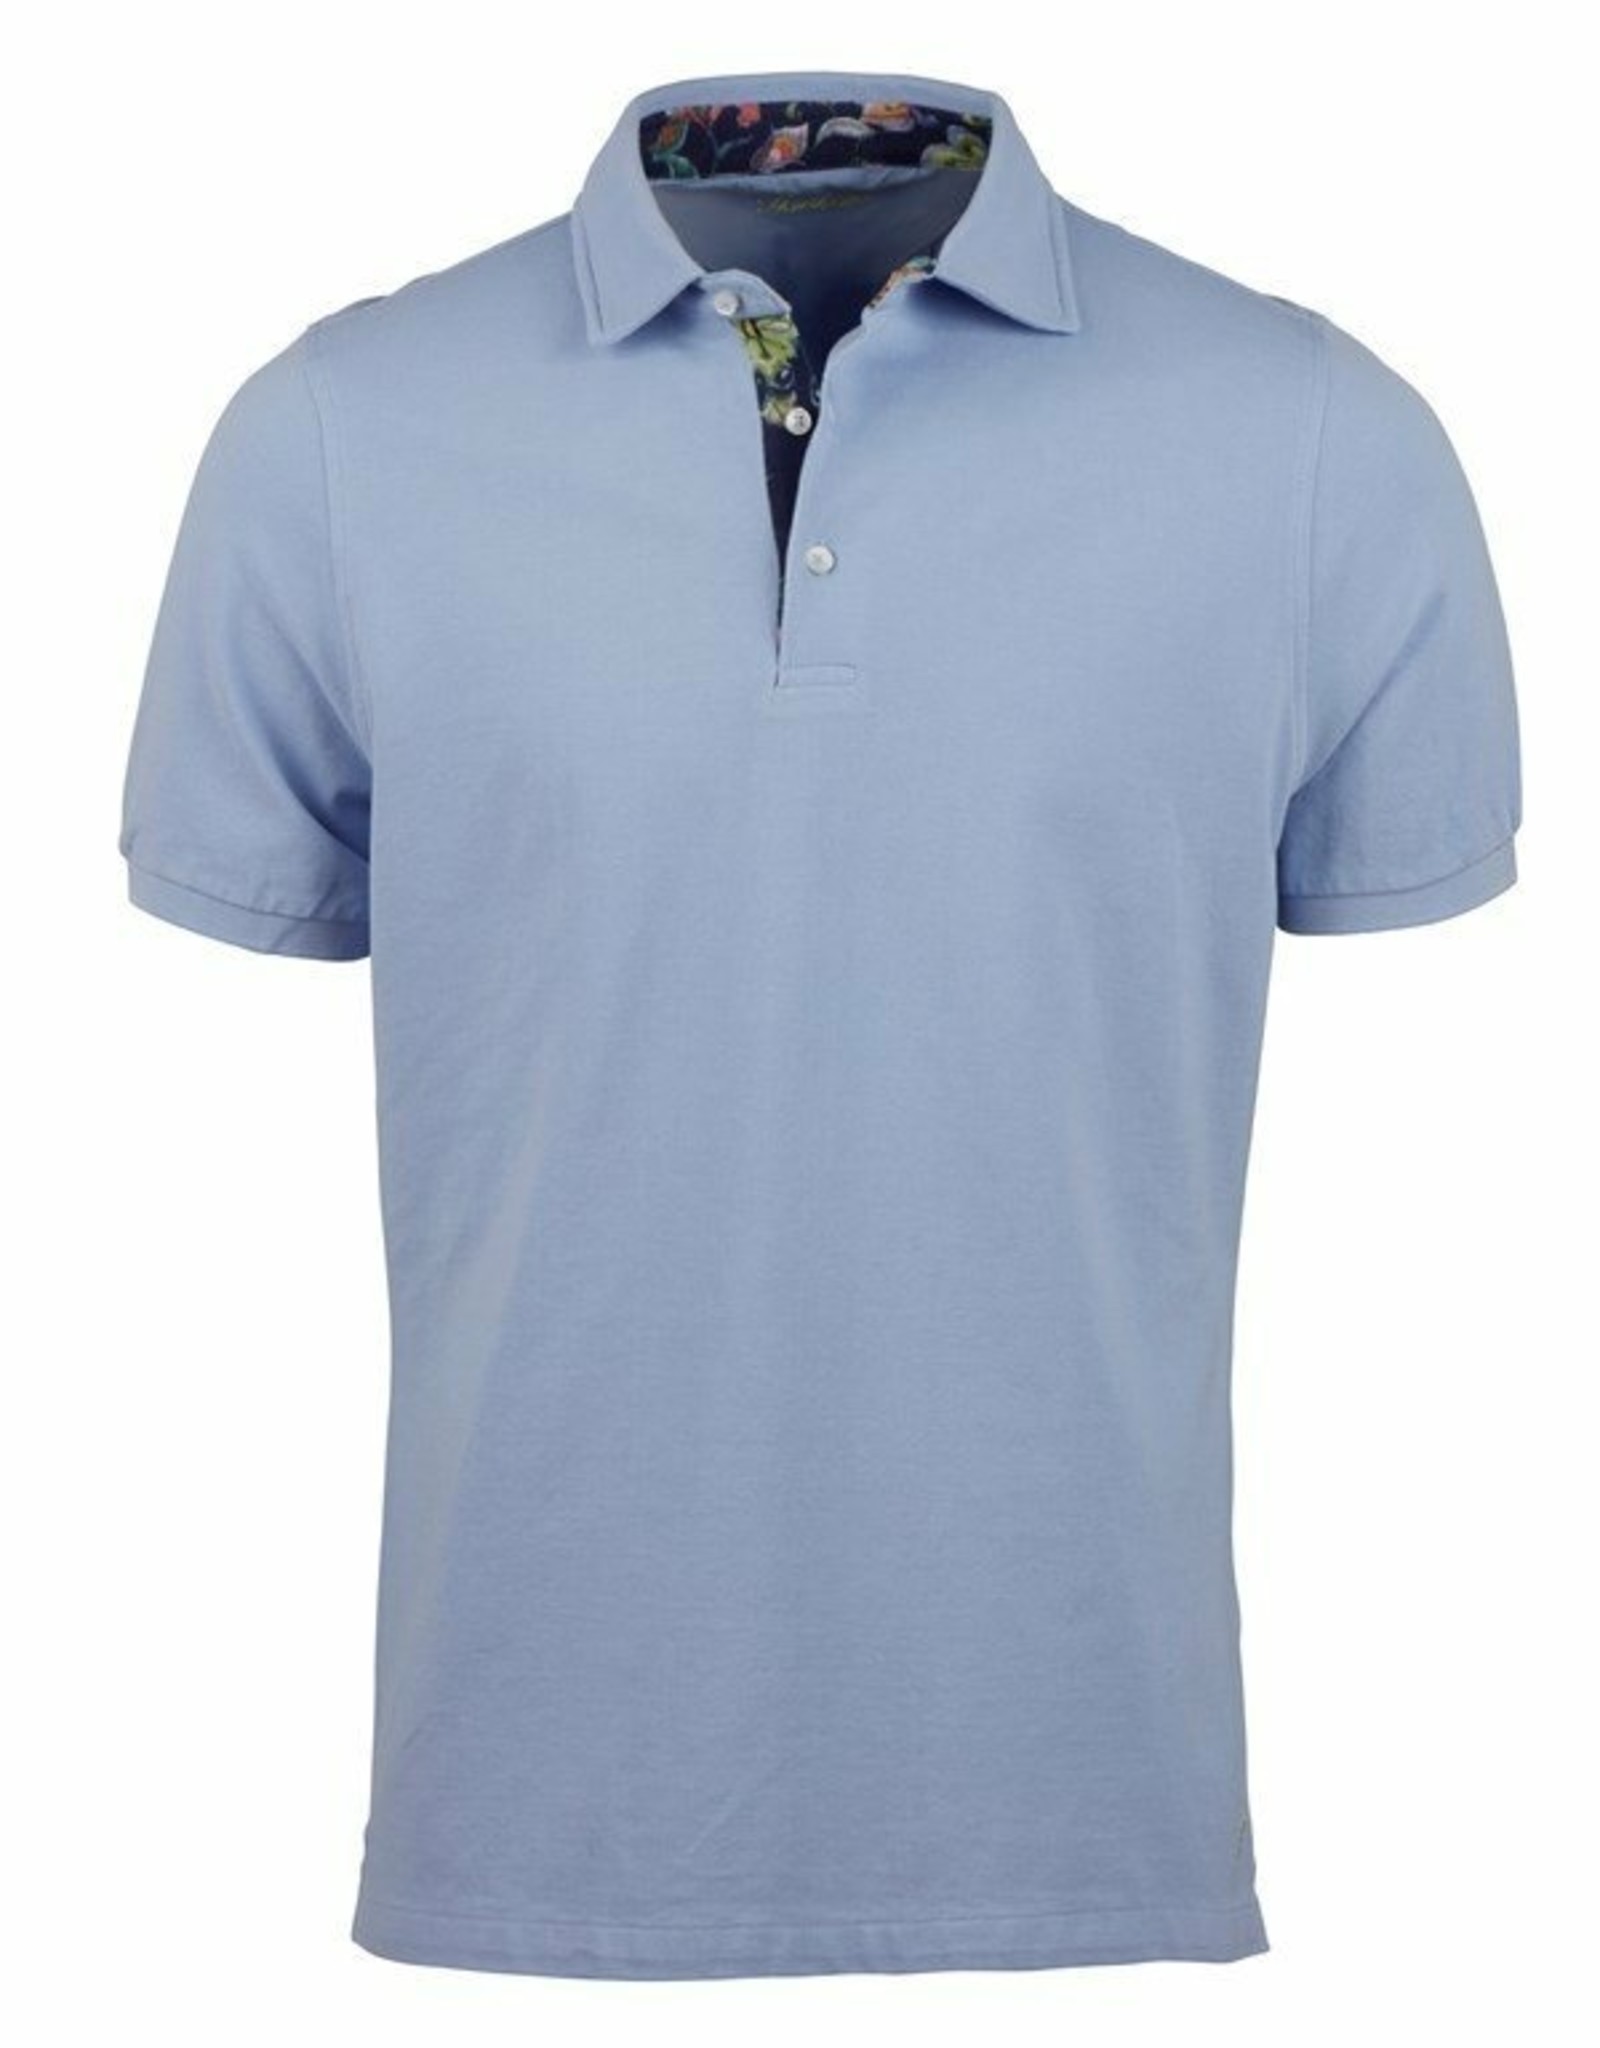 Stenstroms Polo Shirt - Colpitts Men's Wear Ltd.